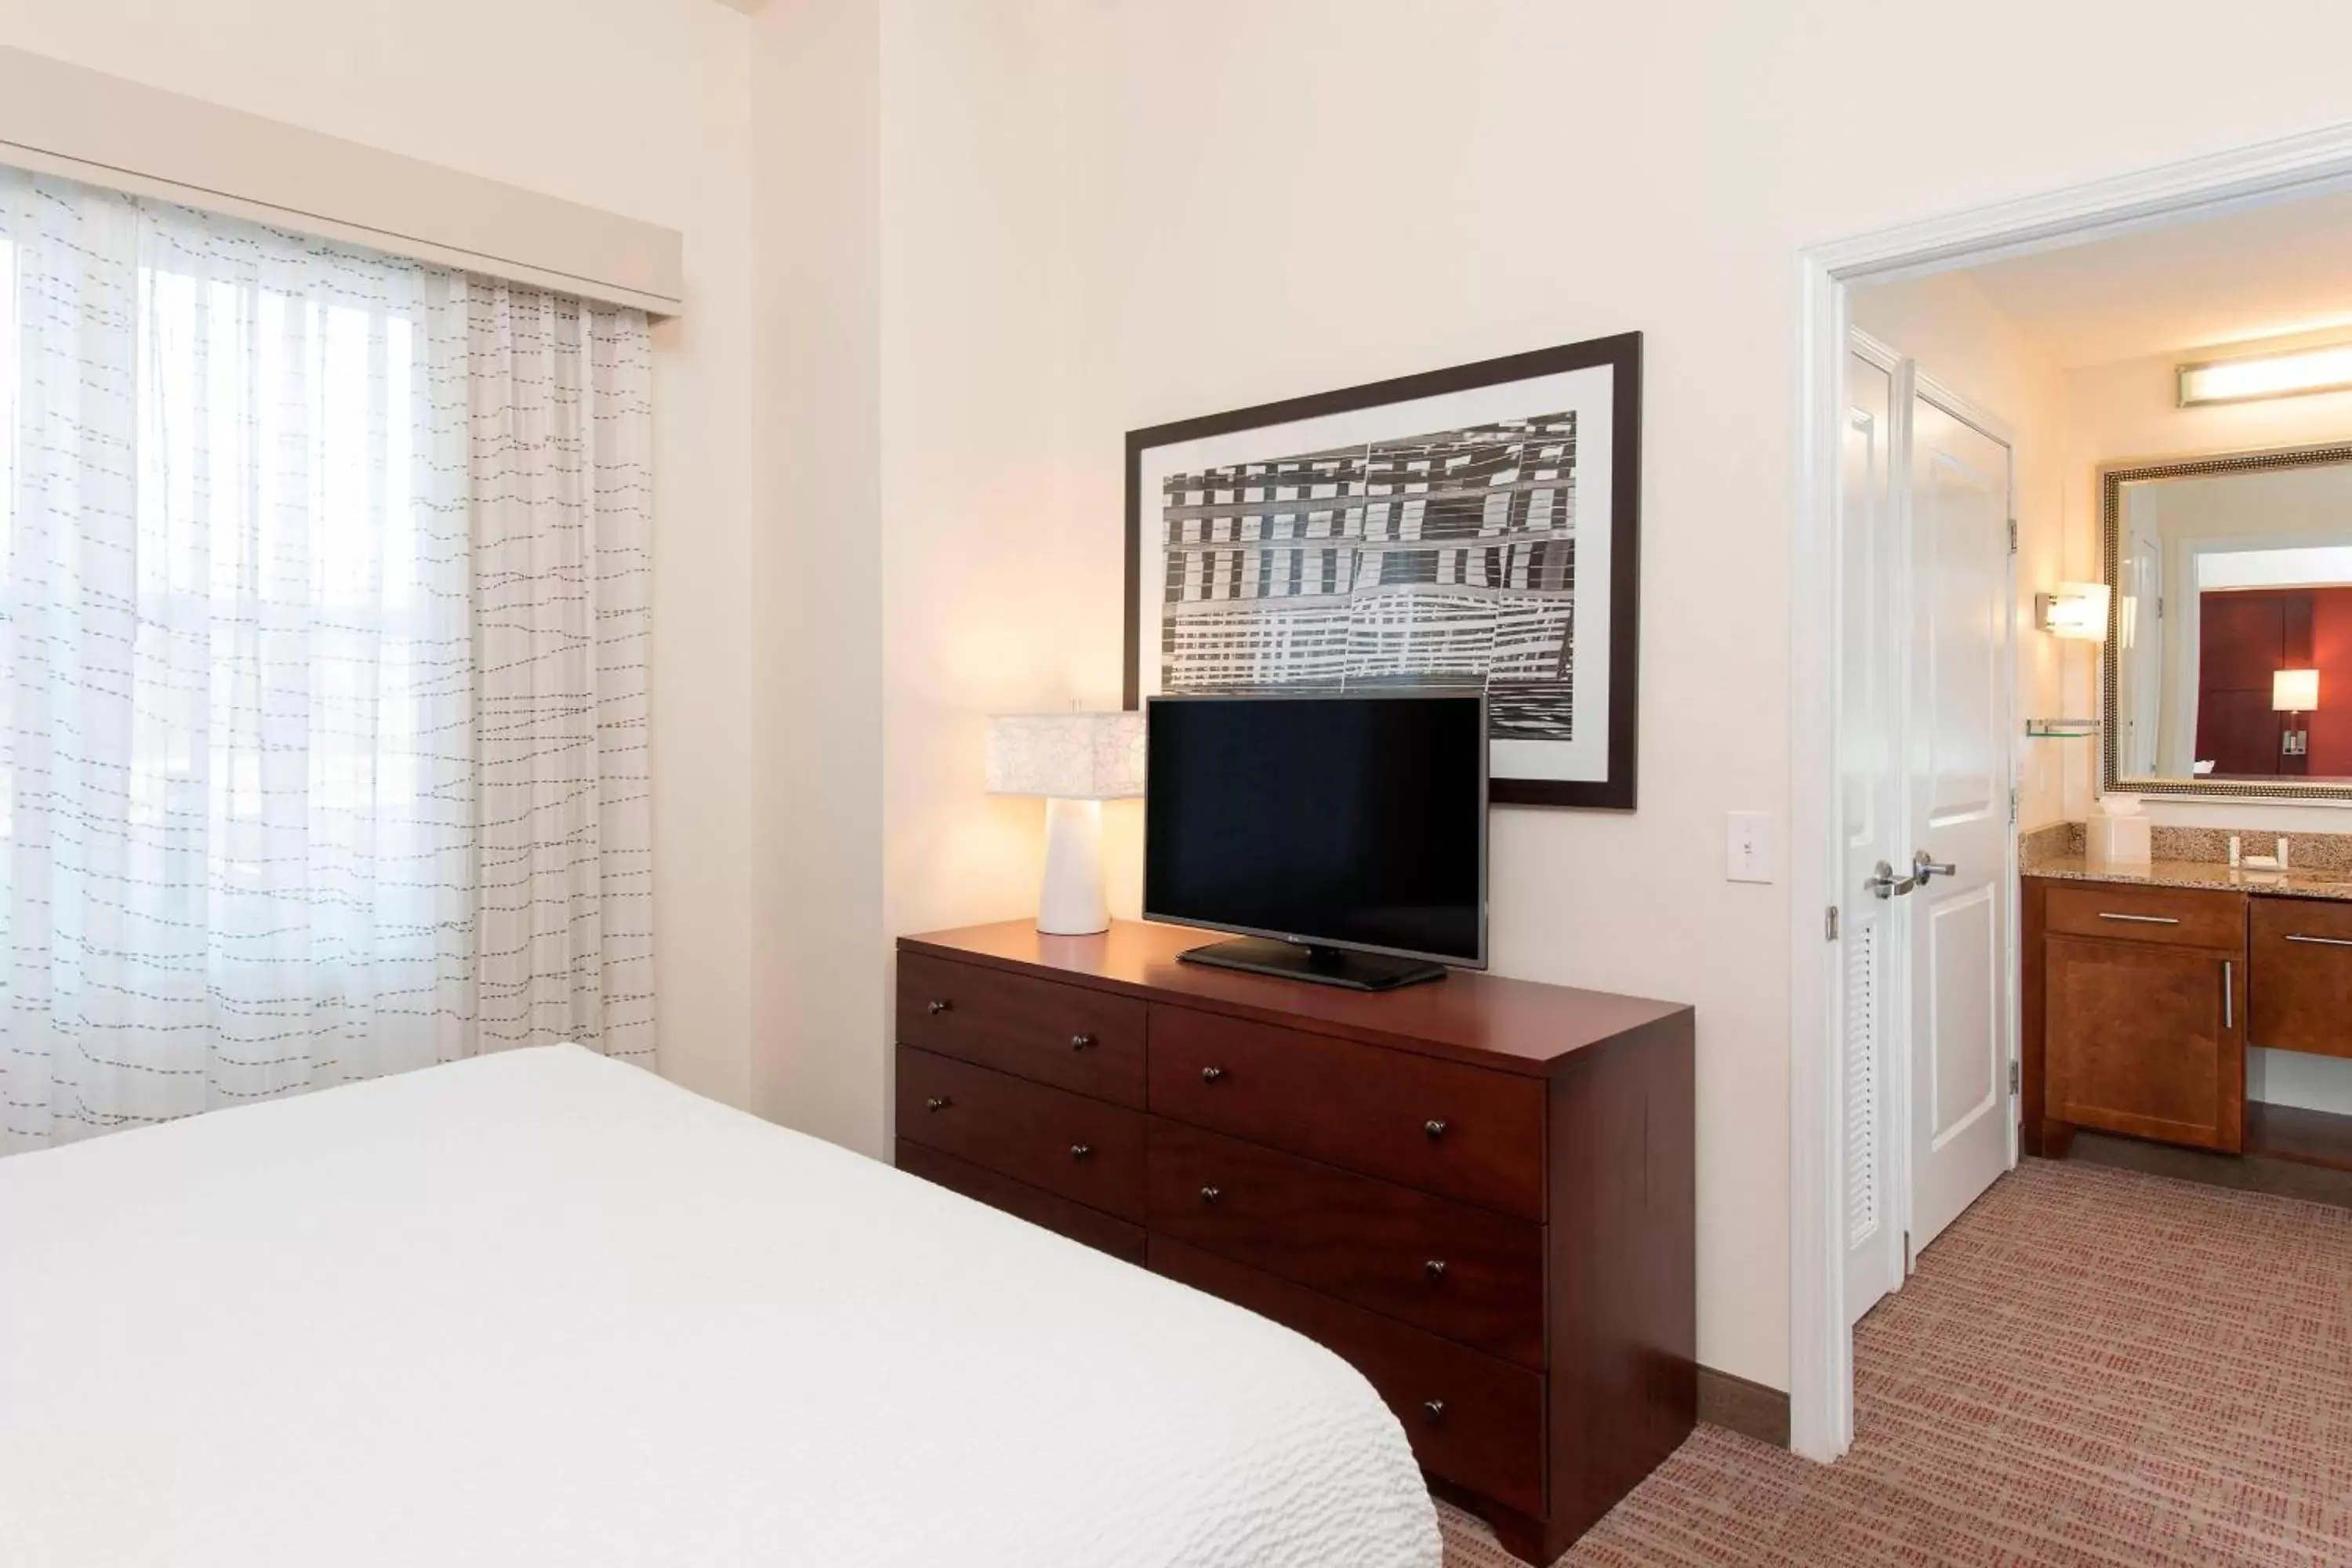 Bedroom, TV/Entertainment Center in Residence Inn Moline Quad Cities